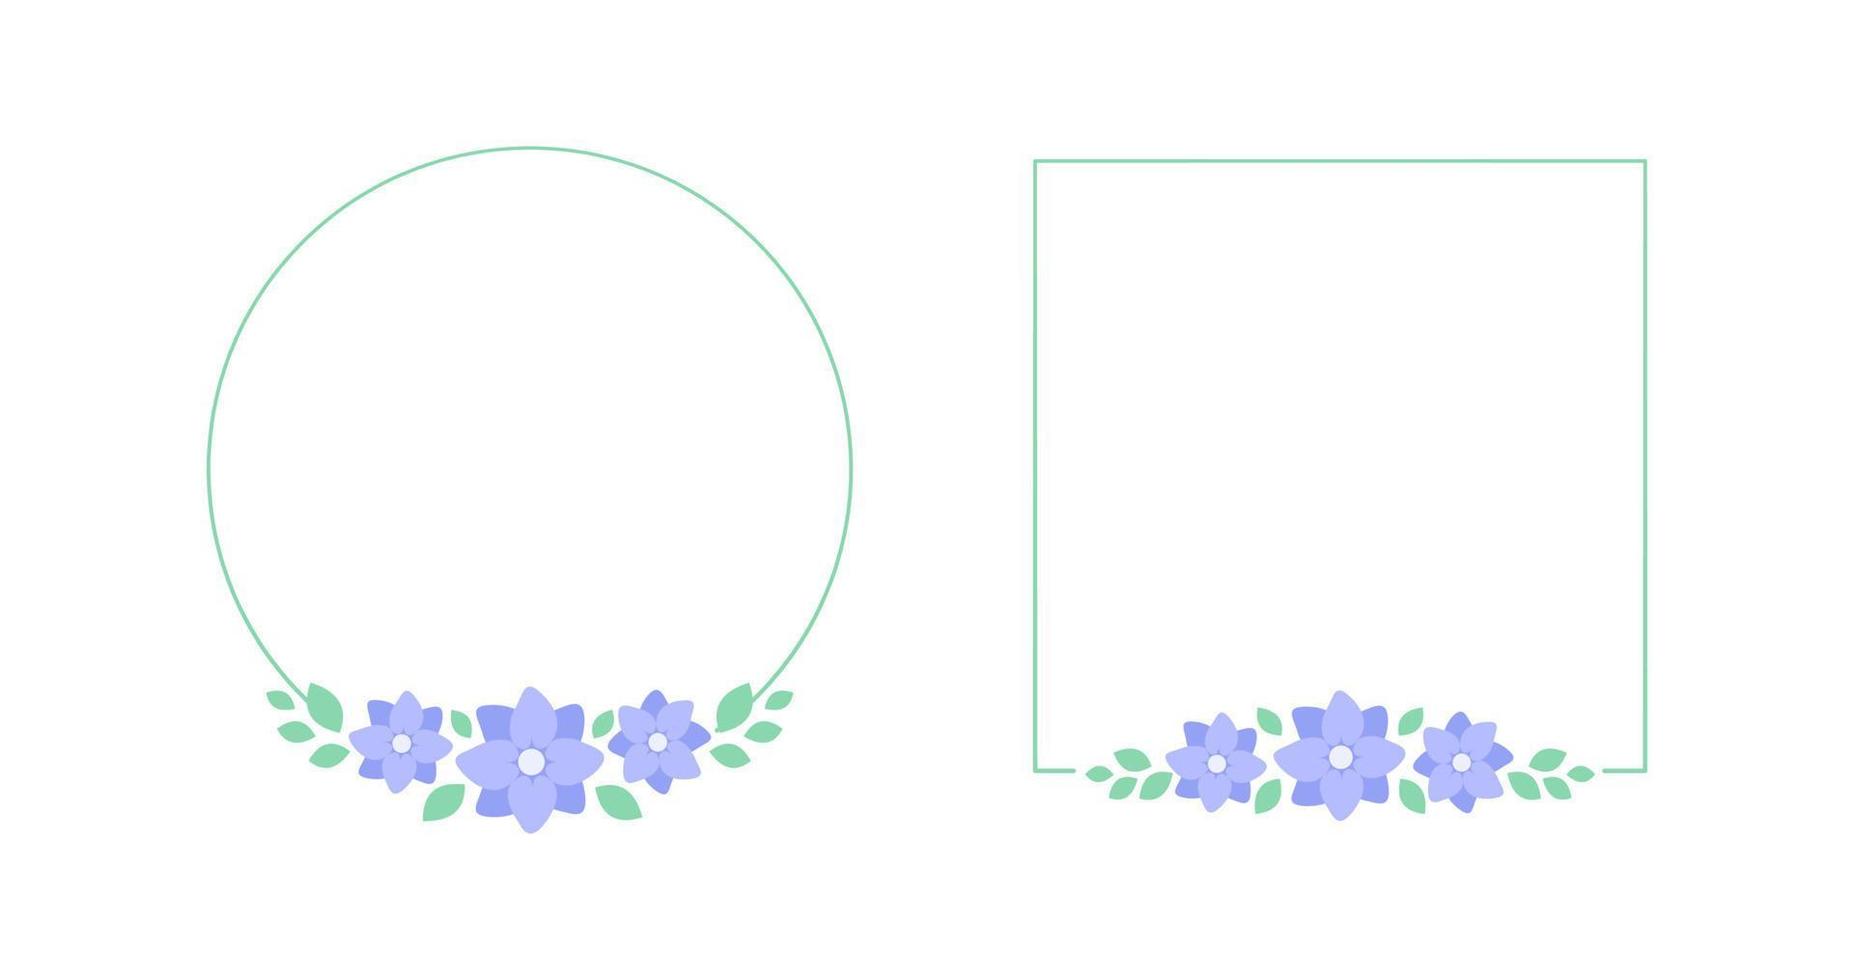 pastell lavendel- blommig ram uppsättning. botanisk blomma gräns vektor illustration. enkel elegant romantisk stil för bröllop evenemang, tecken, logotyp, etiketter, social media inlägg, etc.